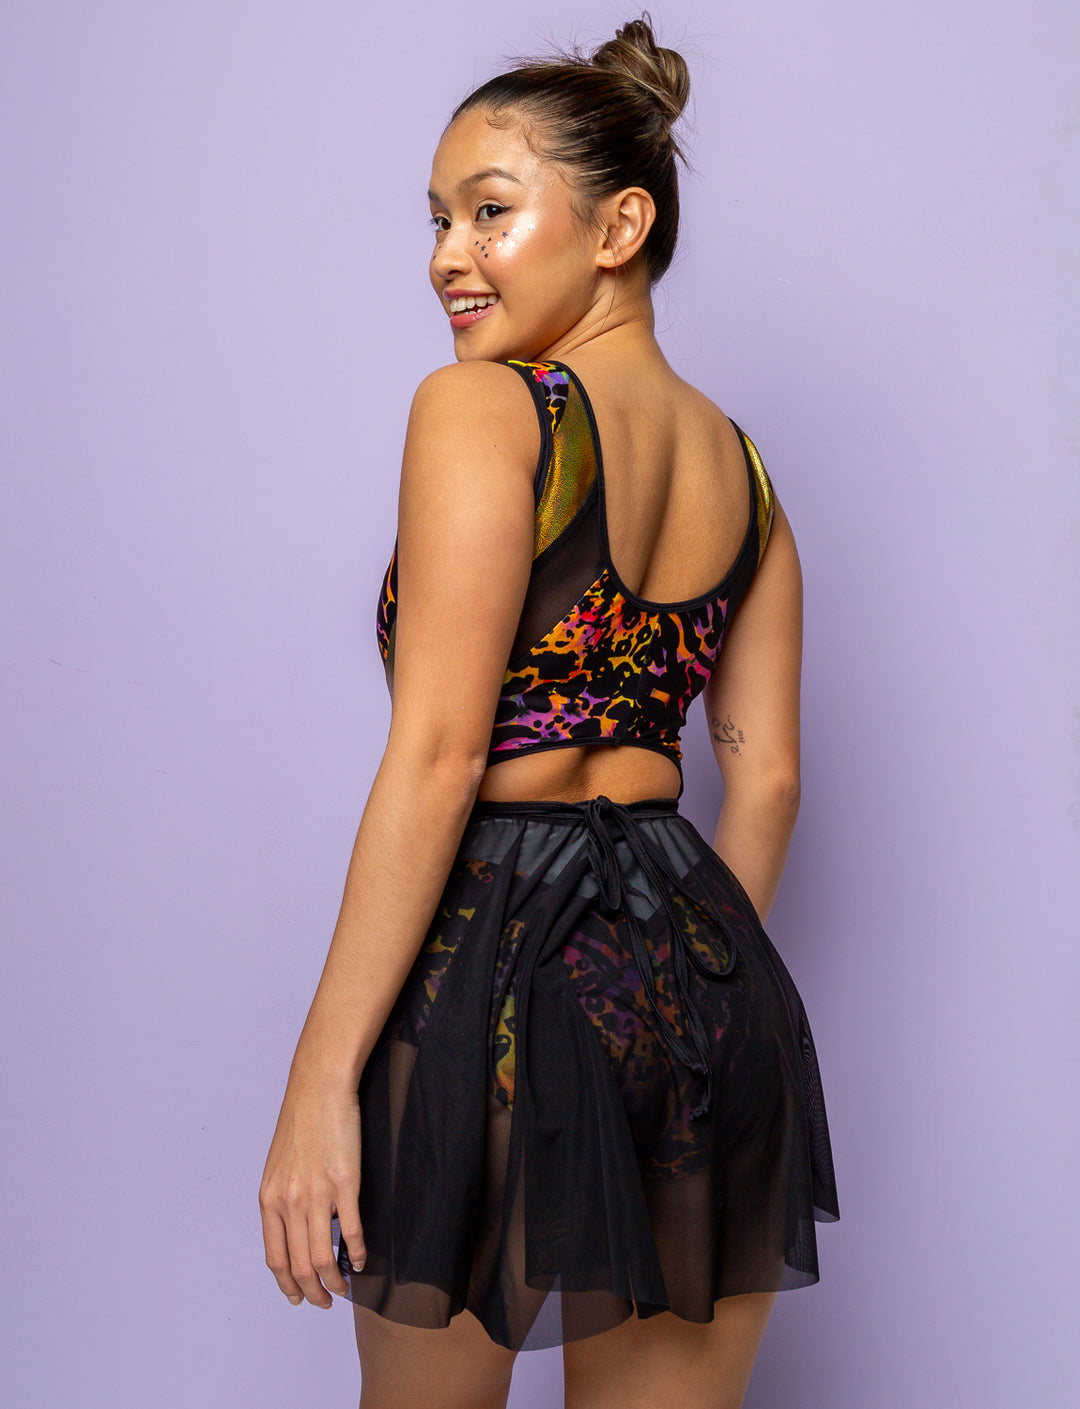 Model wearing a purple leopard print lycra bodysuit with black mesh skirt.